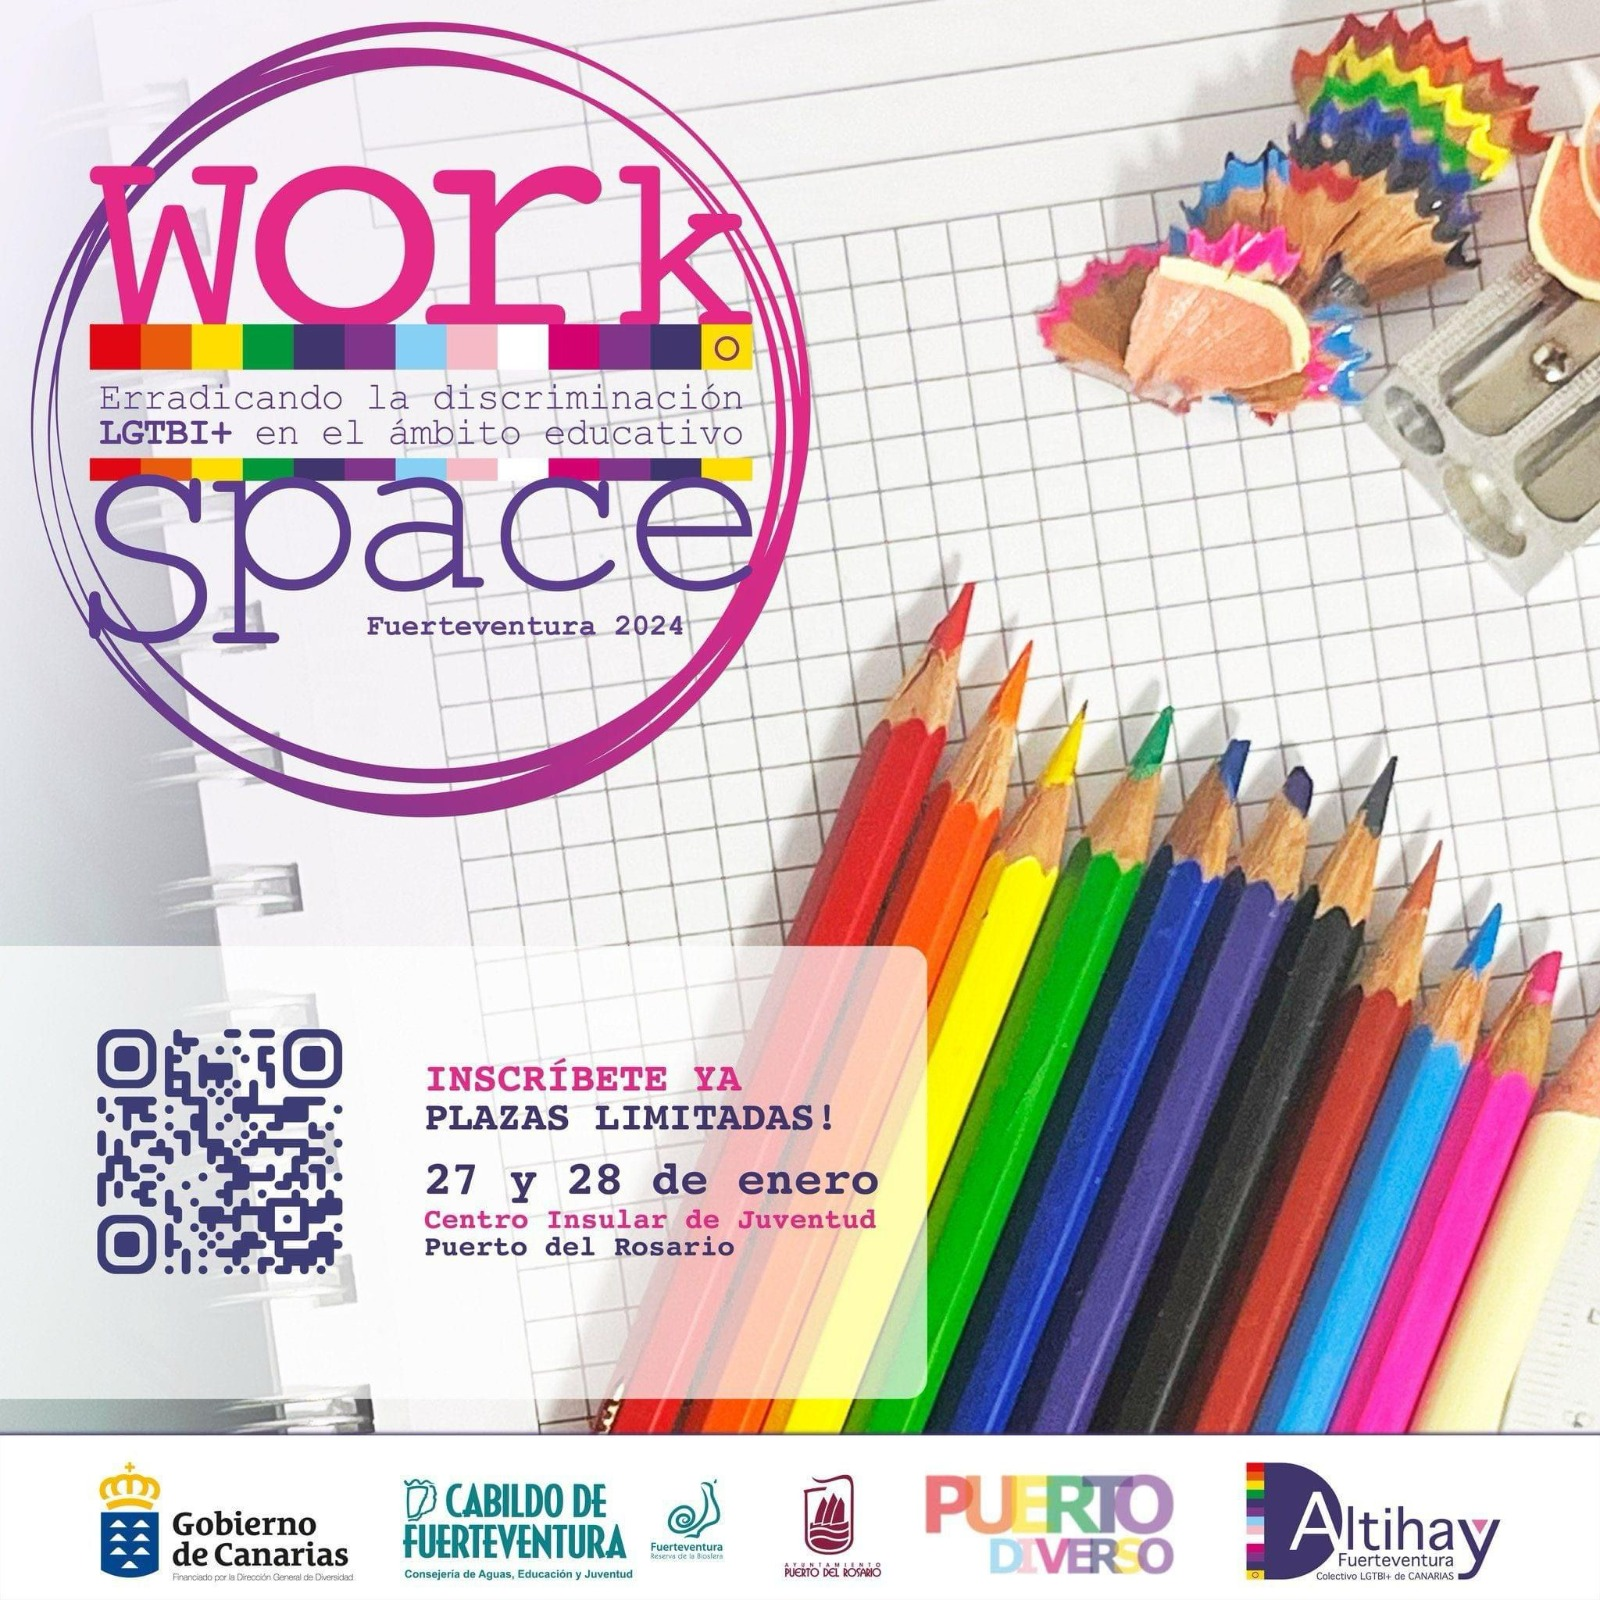 2a Edición WorkSpace: “Erradicando la discriminación LGTBI+ en los ámbitos educativos”